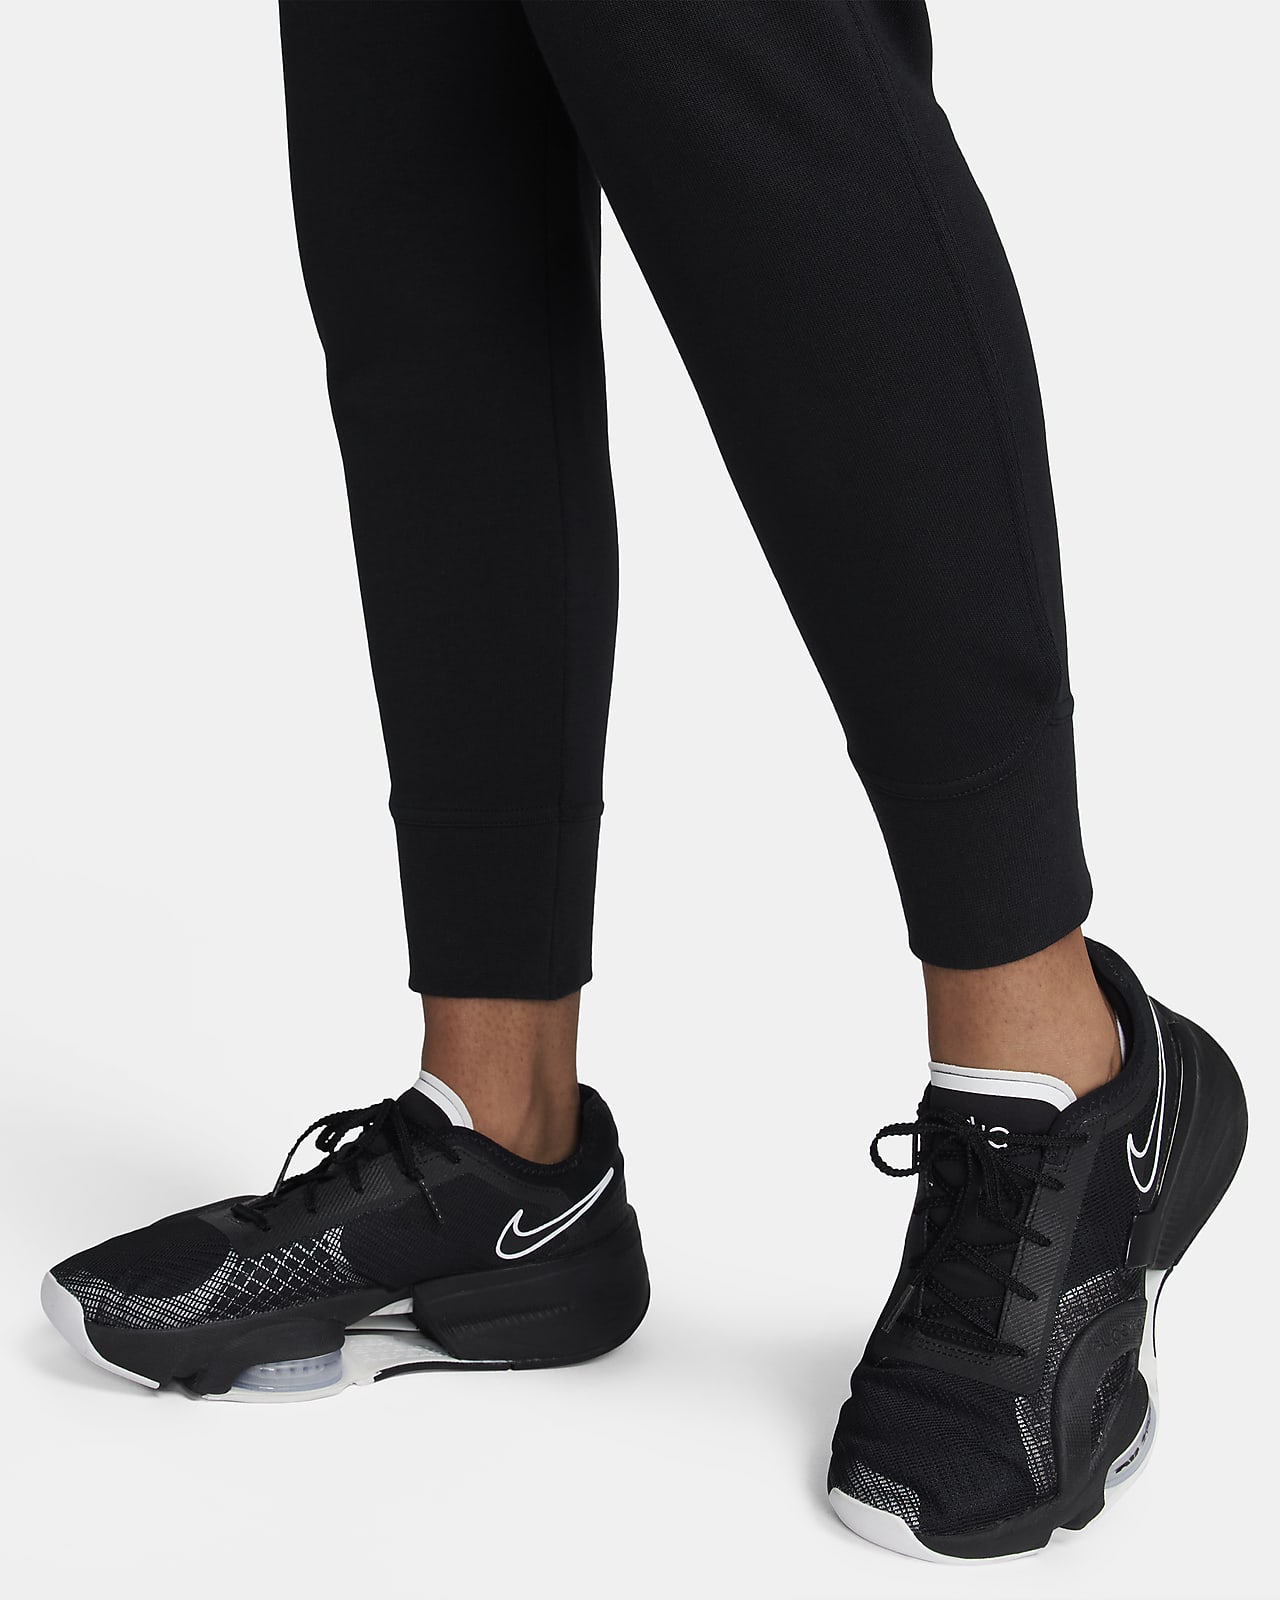 Nike Dri-FIT Fit-træningsbukser til kvinder.